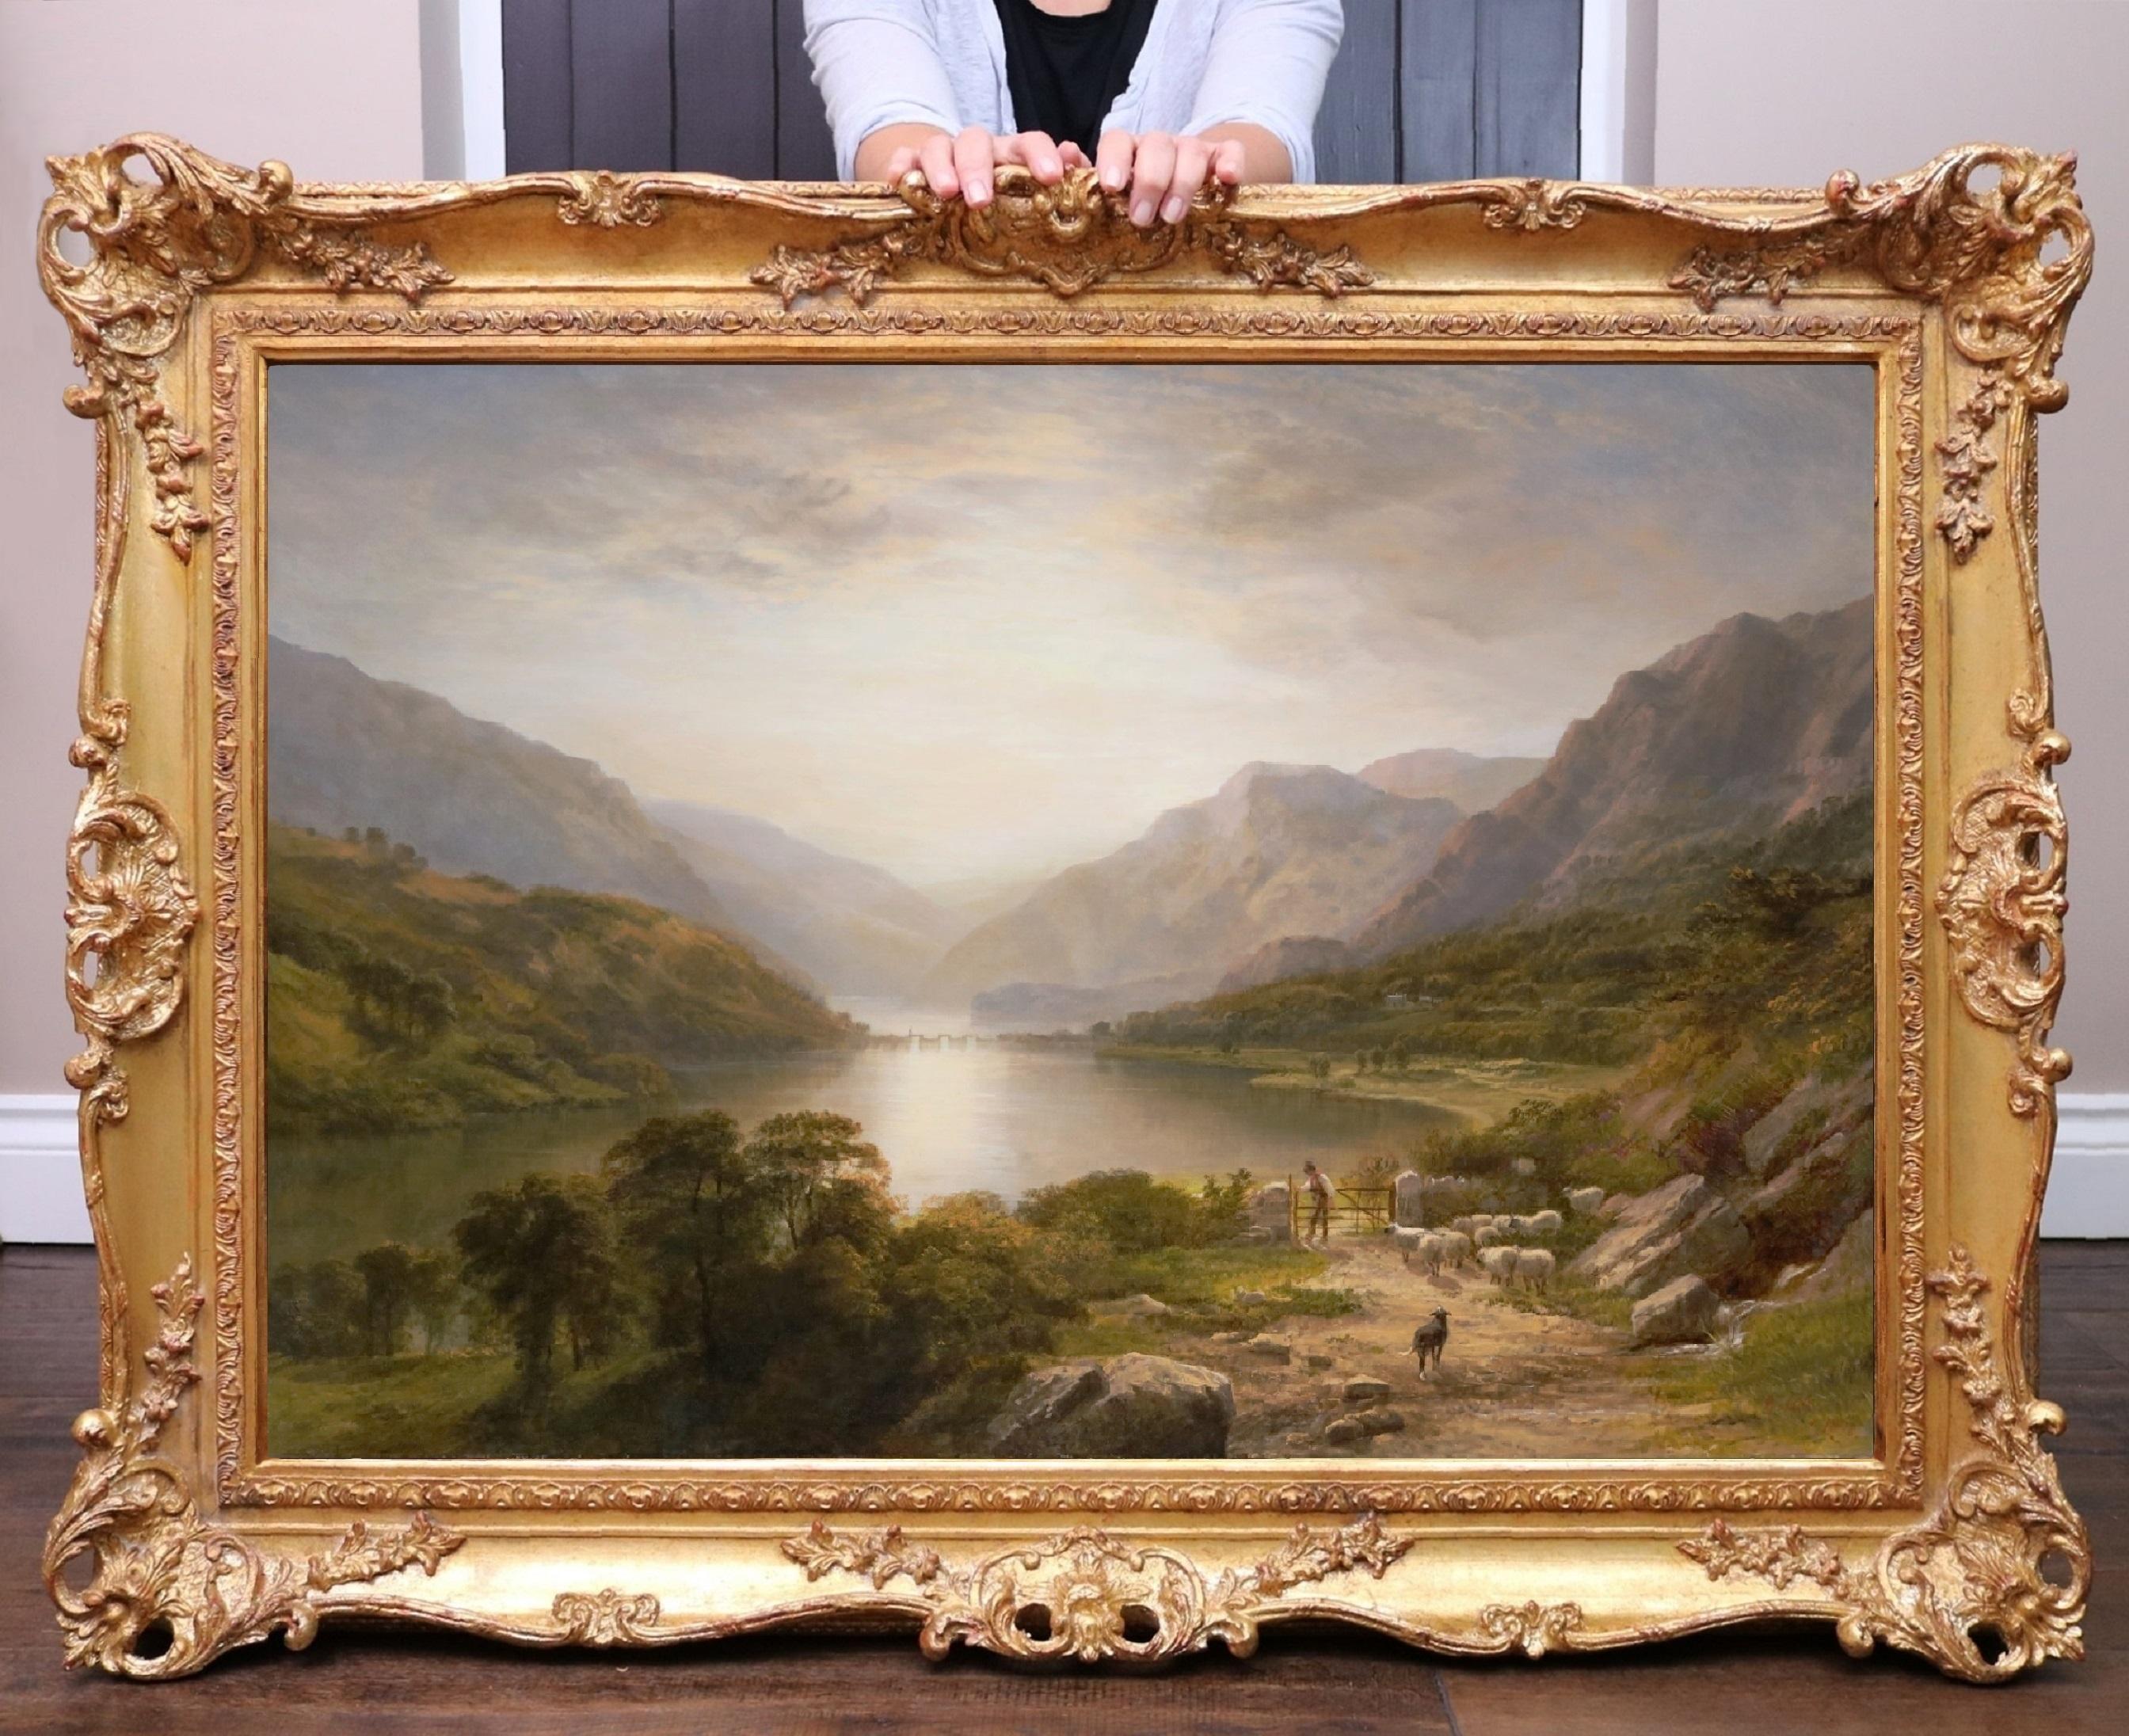 Animal Painting George Cole - The Lake District - Grande peinture anglaise de paysage de coucher de soleil du 19ème siècle